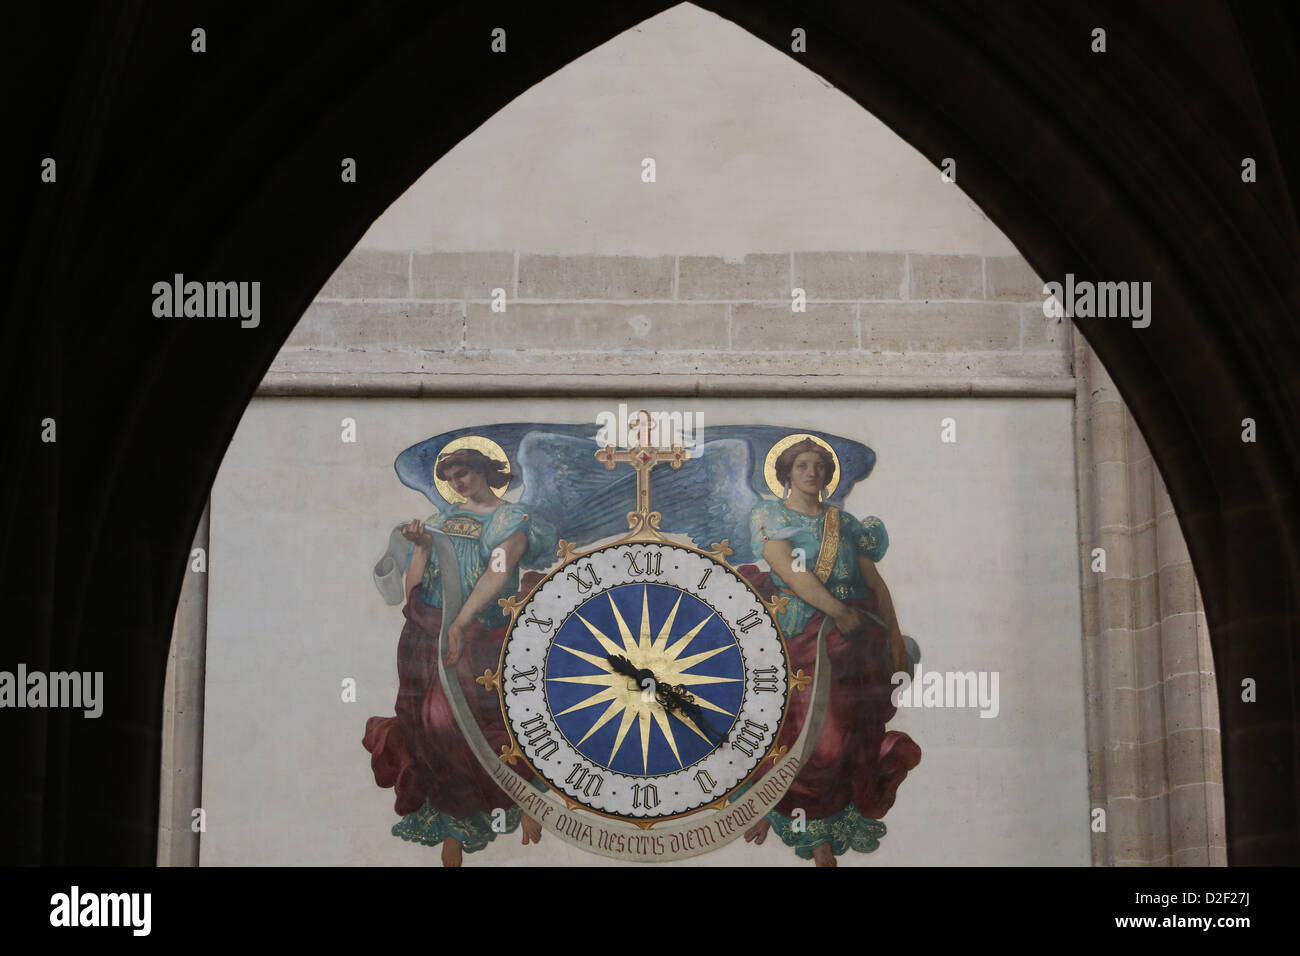 St Germain l'Auxerrois church. Clock. Paris. France. Stock Photo